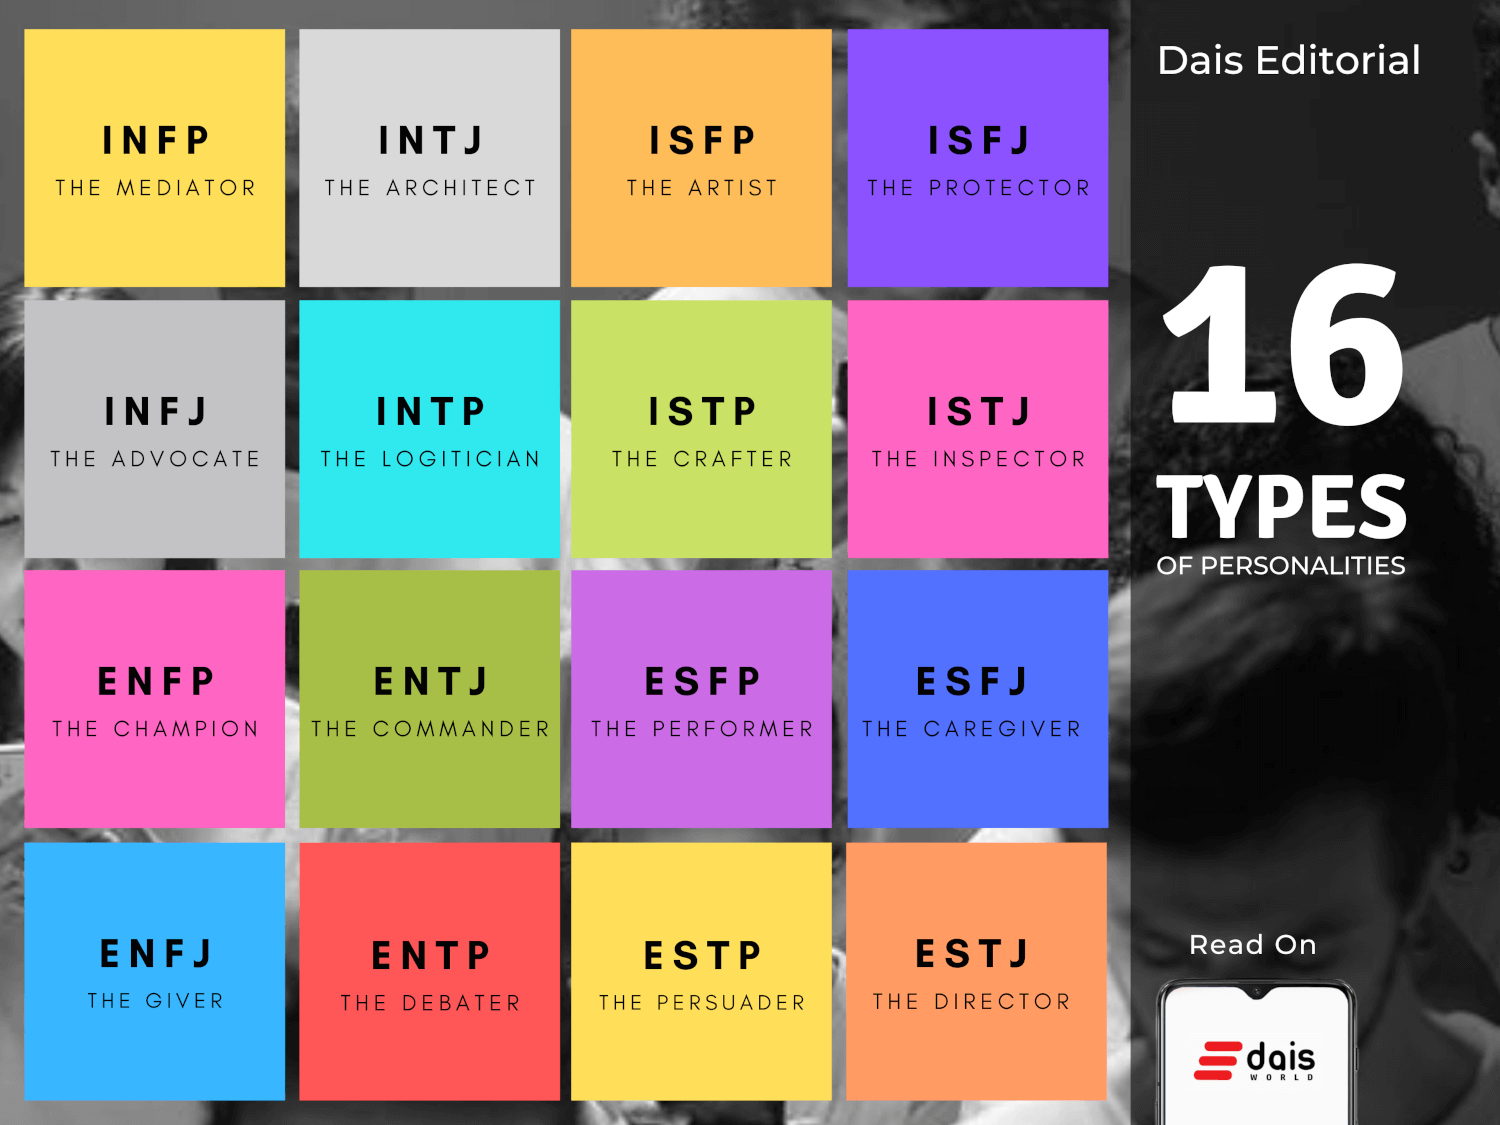 Esri Tuatha Dé MBTI Personality Type: ESFJ or ESFP?